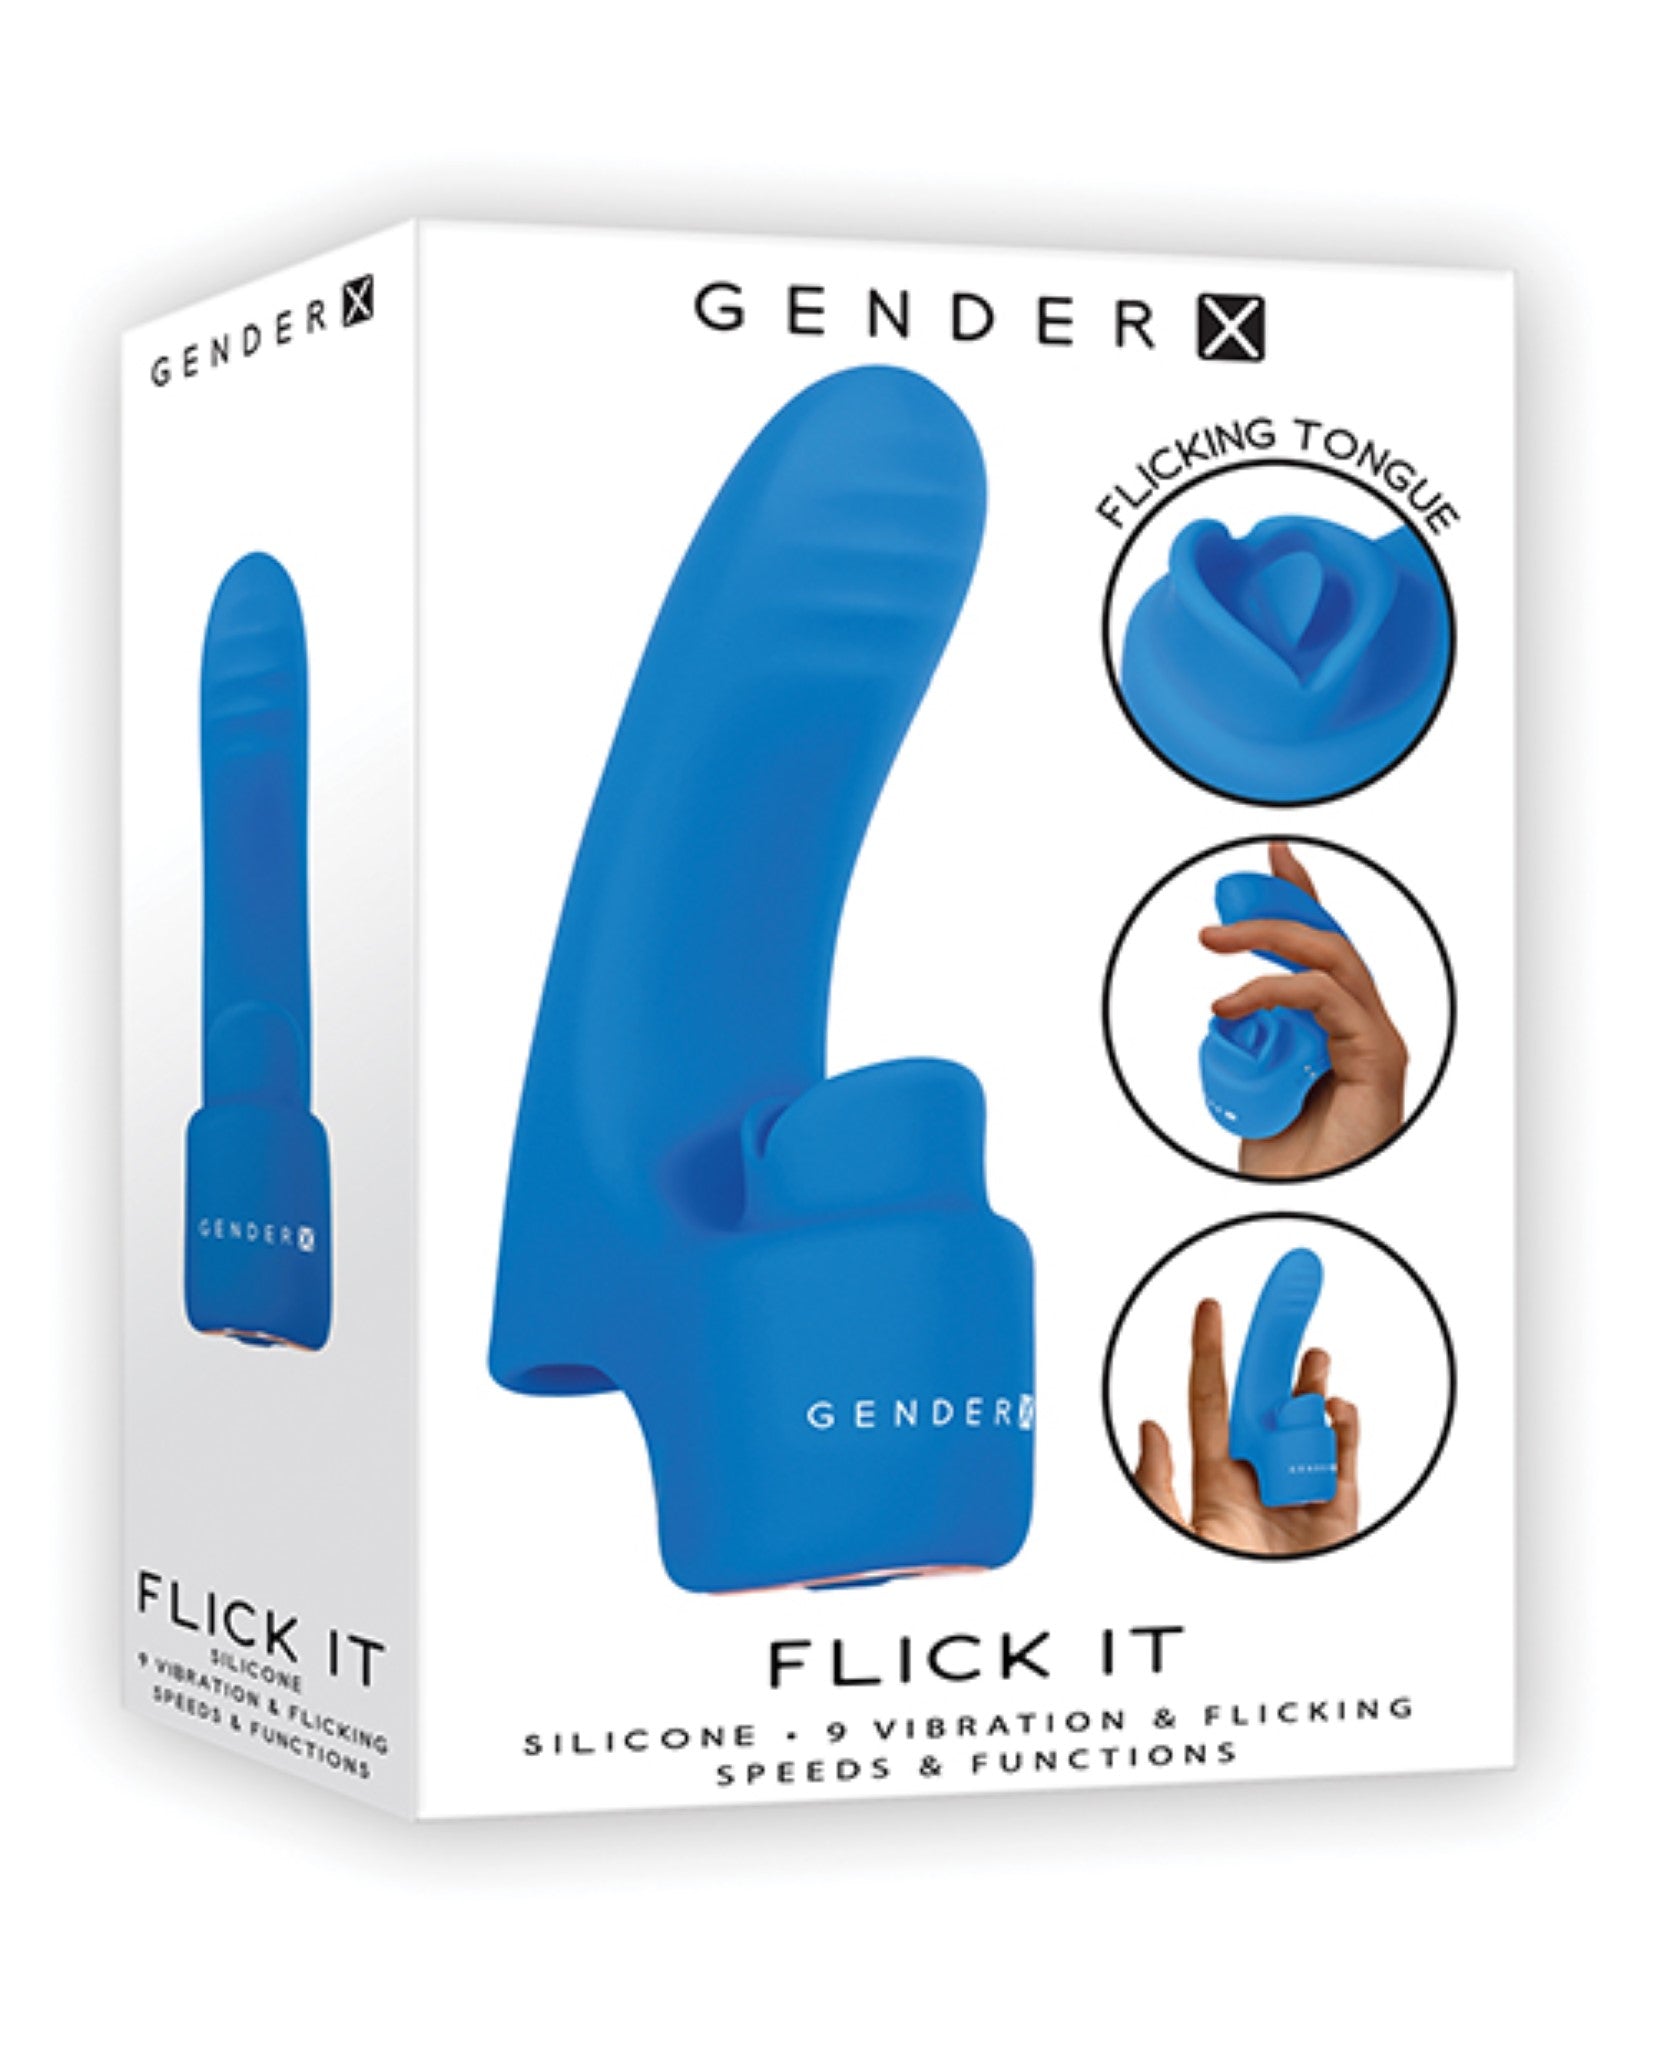 gender-x-flick-it